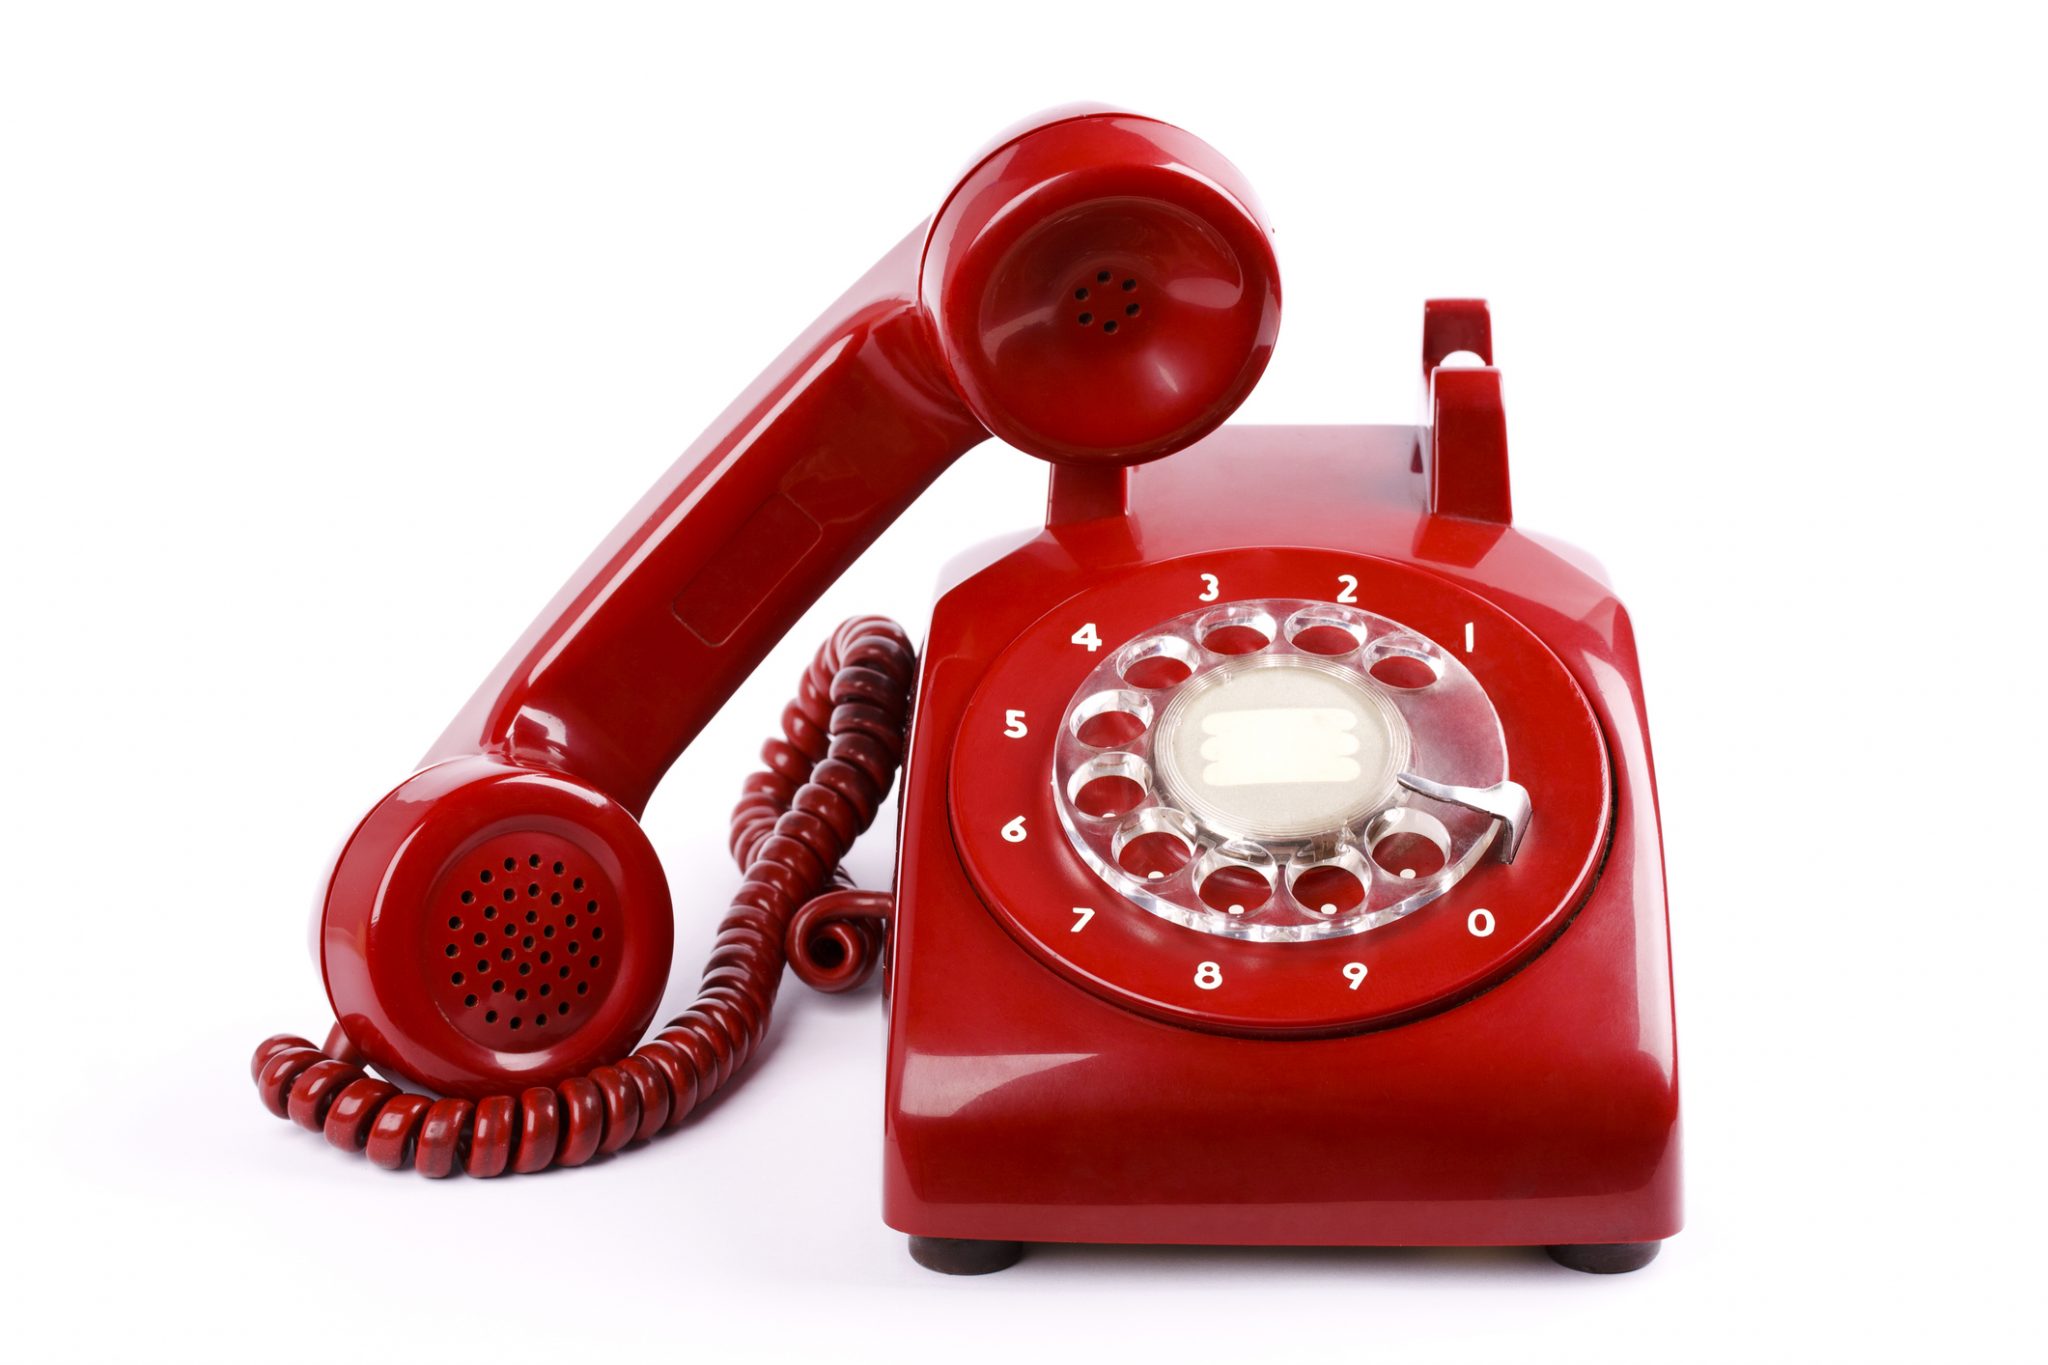 Телефон горячей д. Горячая линия. Красный телефон. Телефонная трубка. Красный телефонный аппарат.